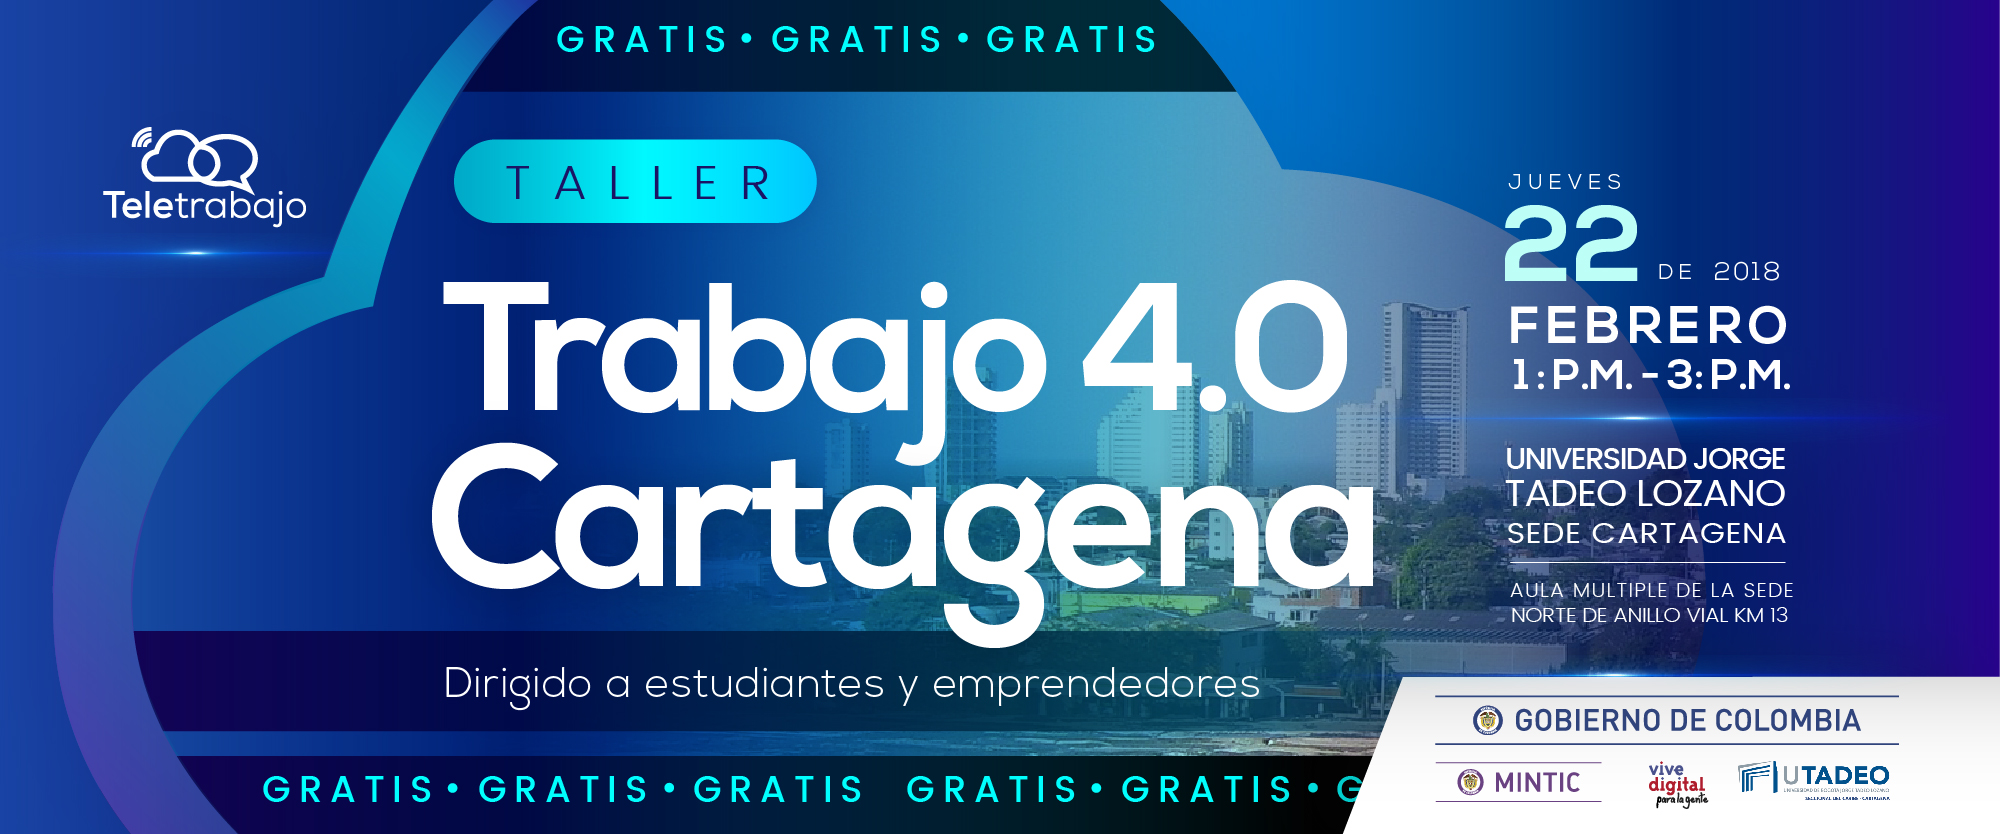 Taller de Trabajo 4.0 en Cartagena